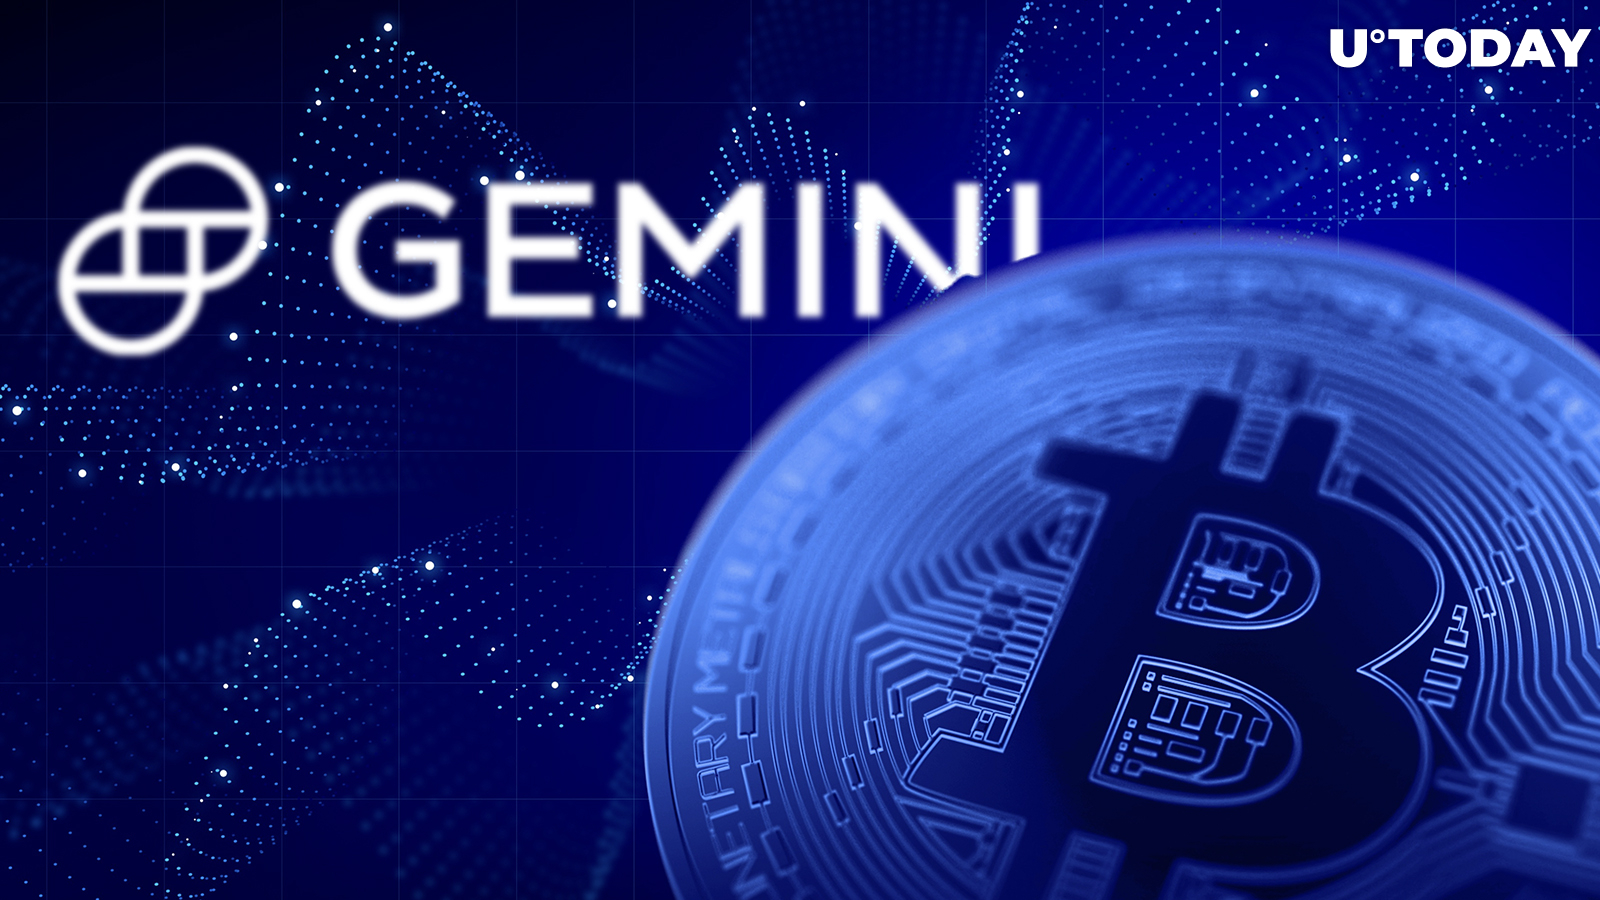 25% of Gemini's BTC Withdrawn, BlackRock Activity Suspected